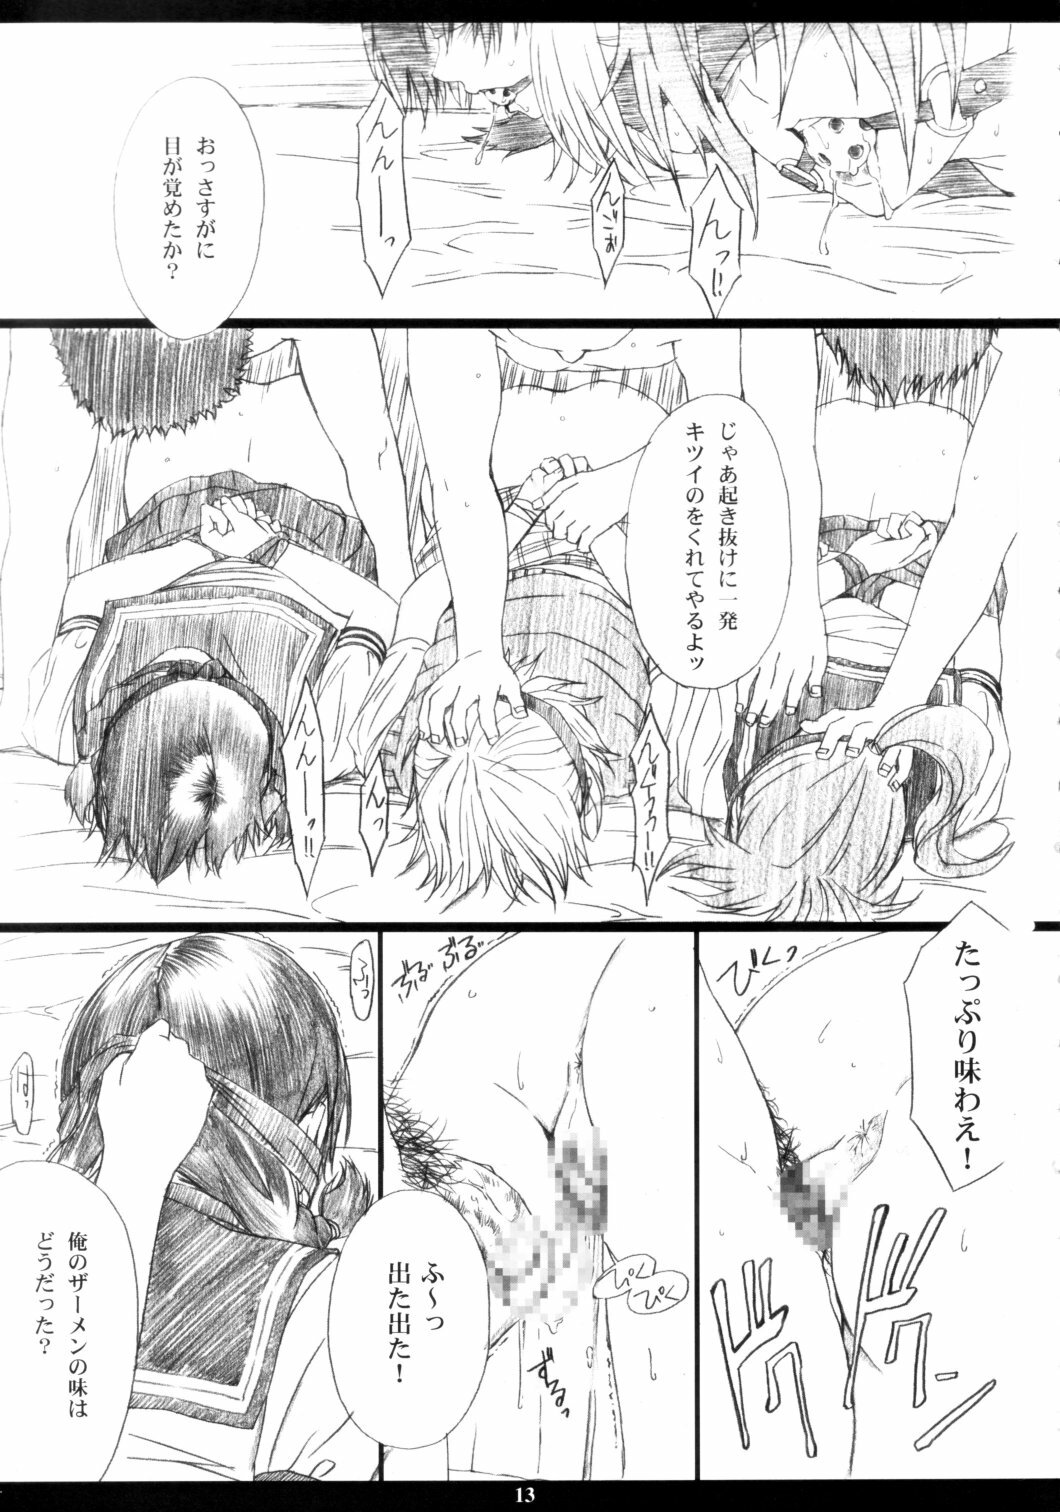 [M (Amano Ameno)] Ichigo MAX% (Ichigo 100%) [2003-02] page 12 full